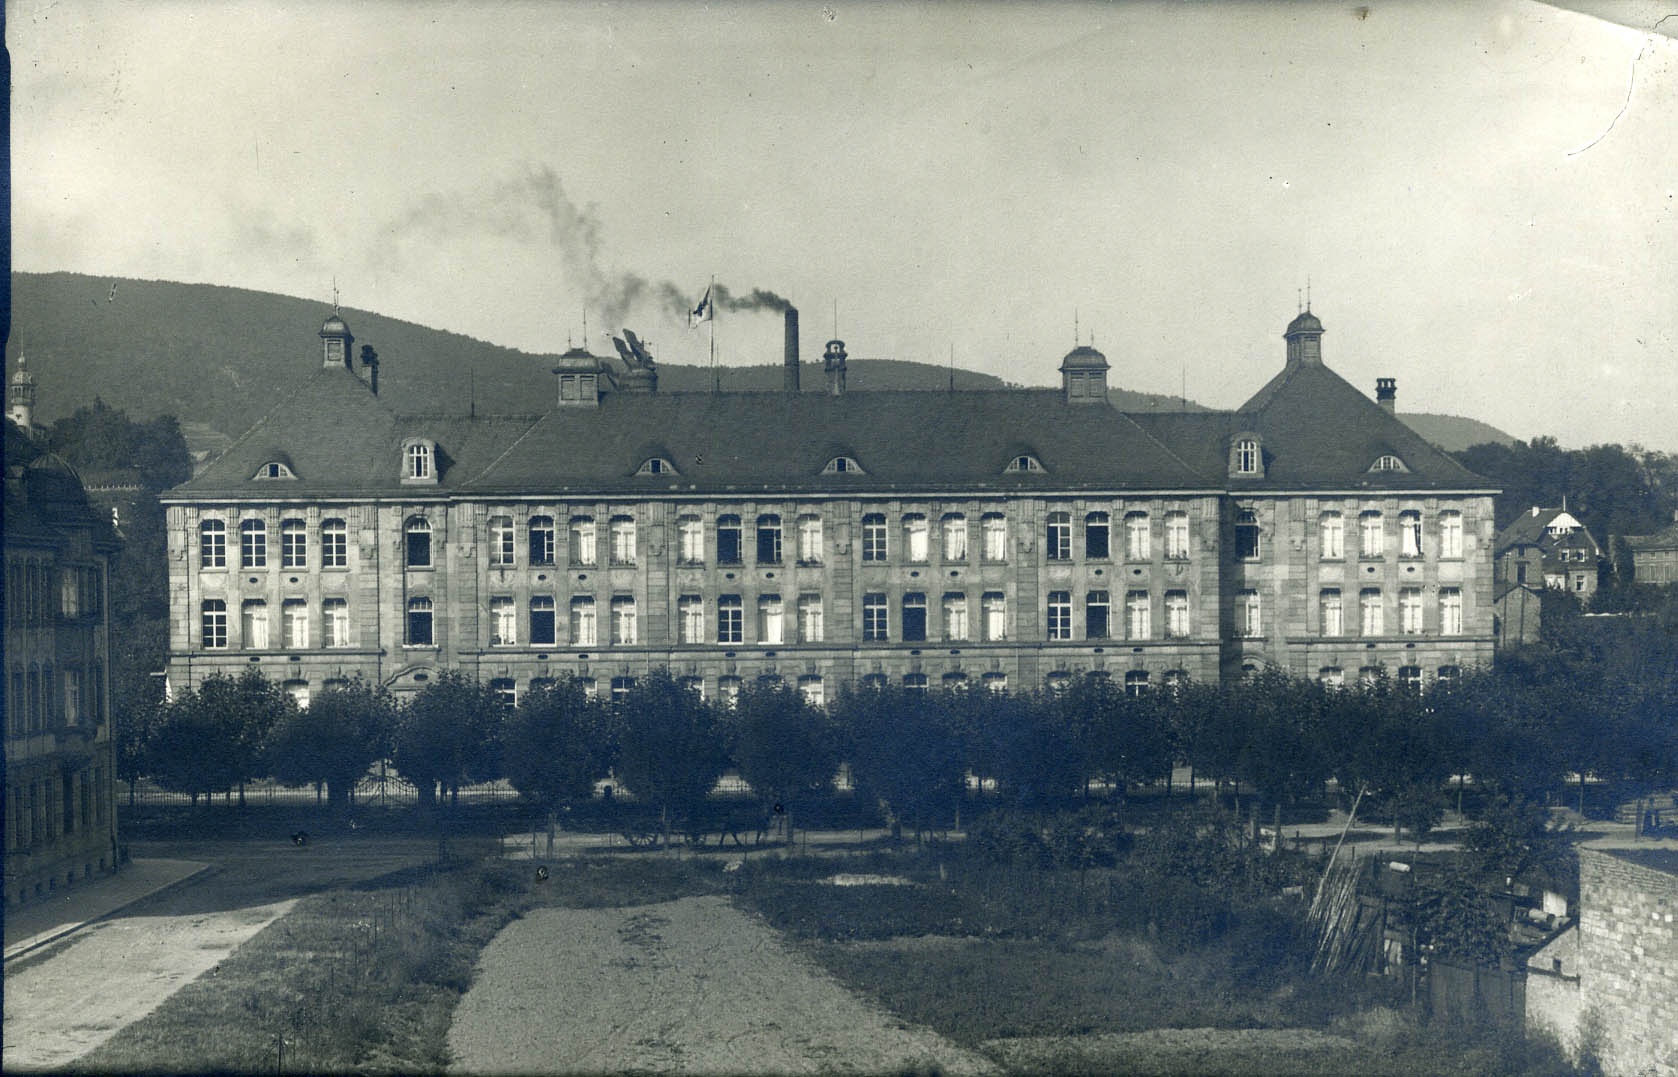 Fotografie "Vereinslazarett IV, Neustadt a.d.W." (Historisches Museum der Pfalz, Speyer CC BY)